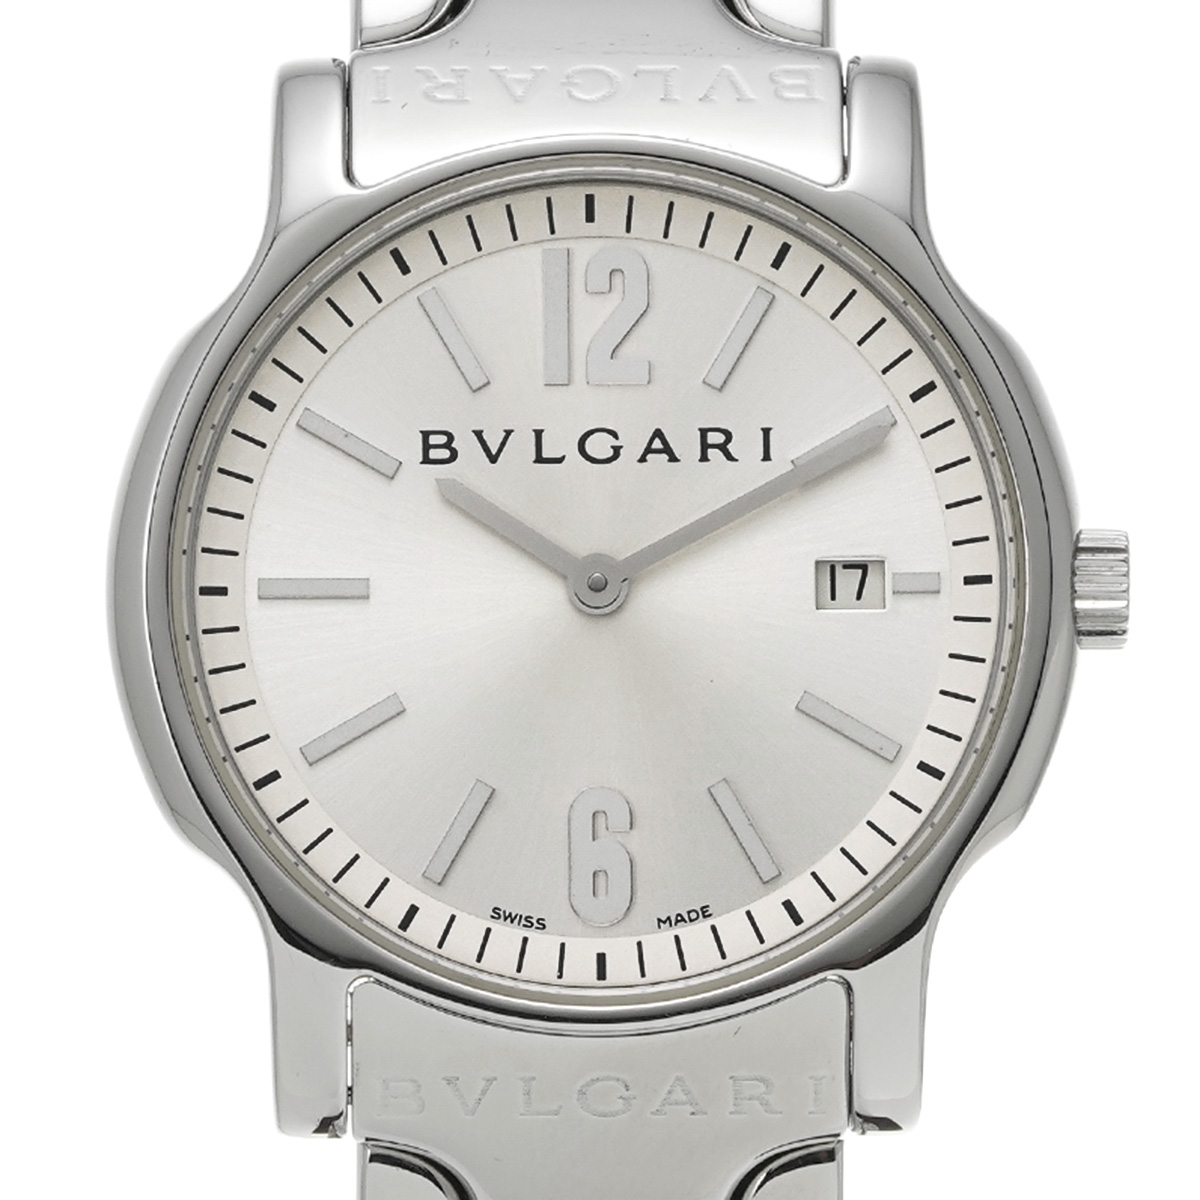 ブルガリ / BVLGARI ソロテンポ ST35S シルバー ユニセックス 時計 【中古】【wristwatch】: 時計